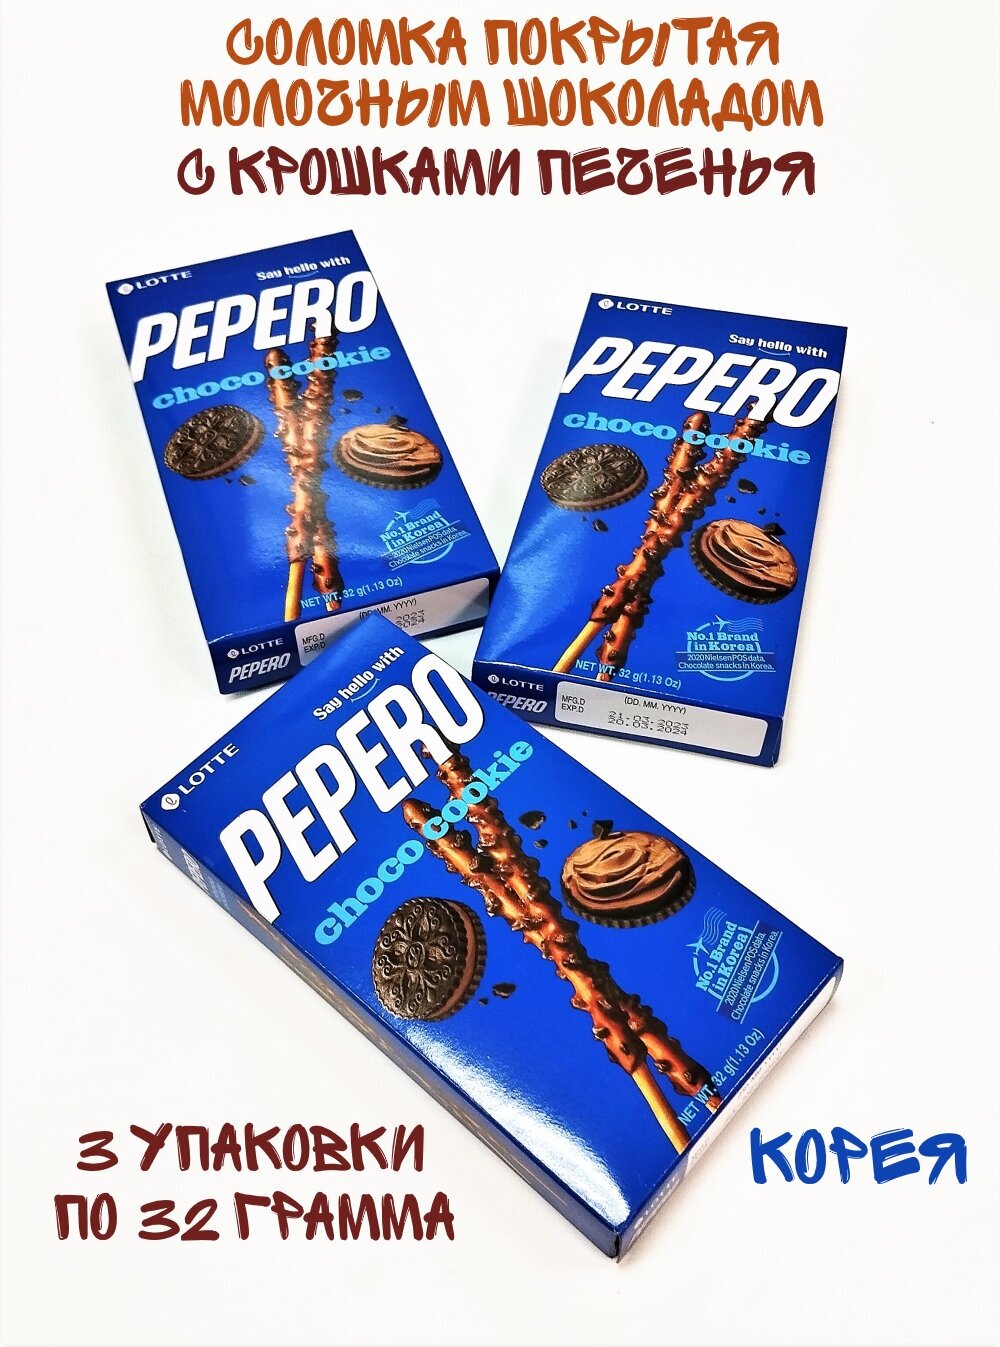 Соломка Lotte Pepero Choco Cookie, 3 упаковки по 32 грамма